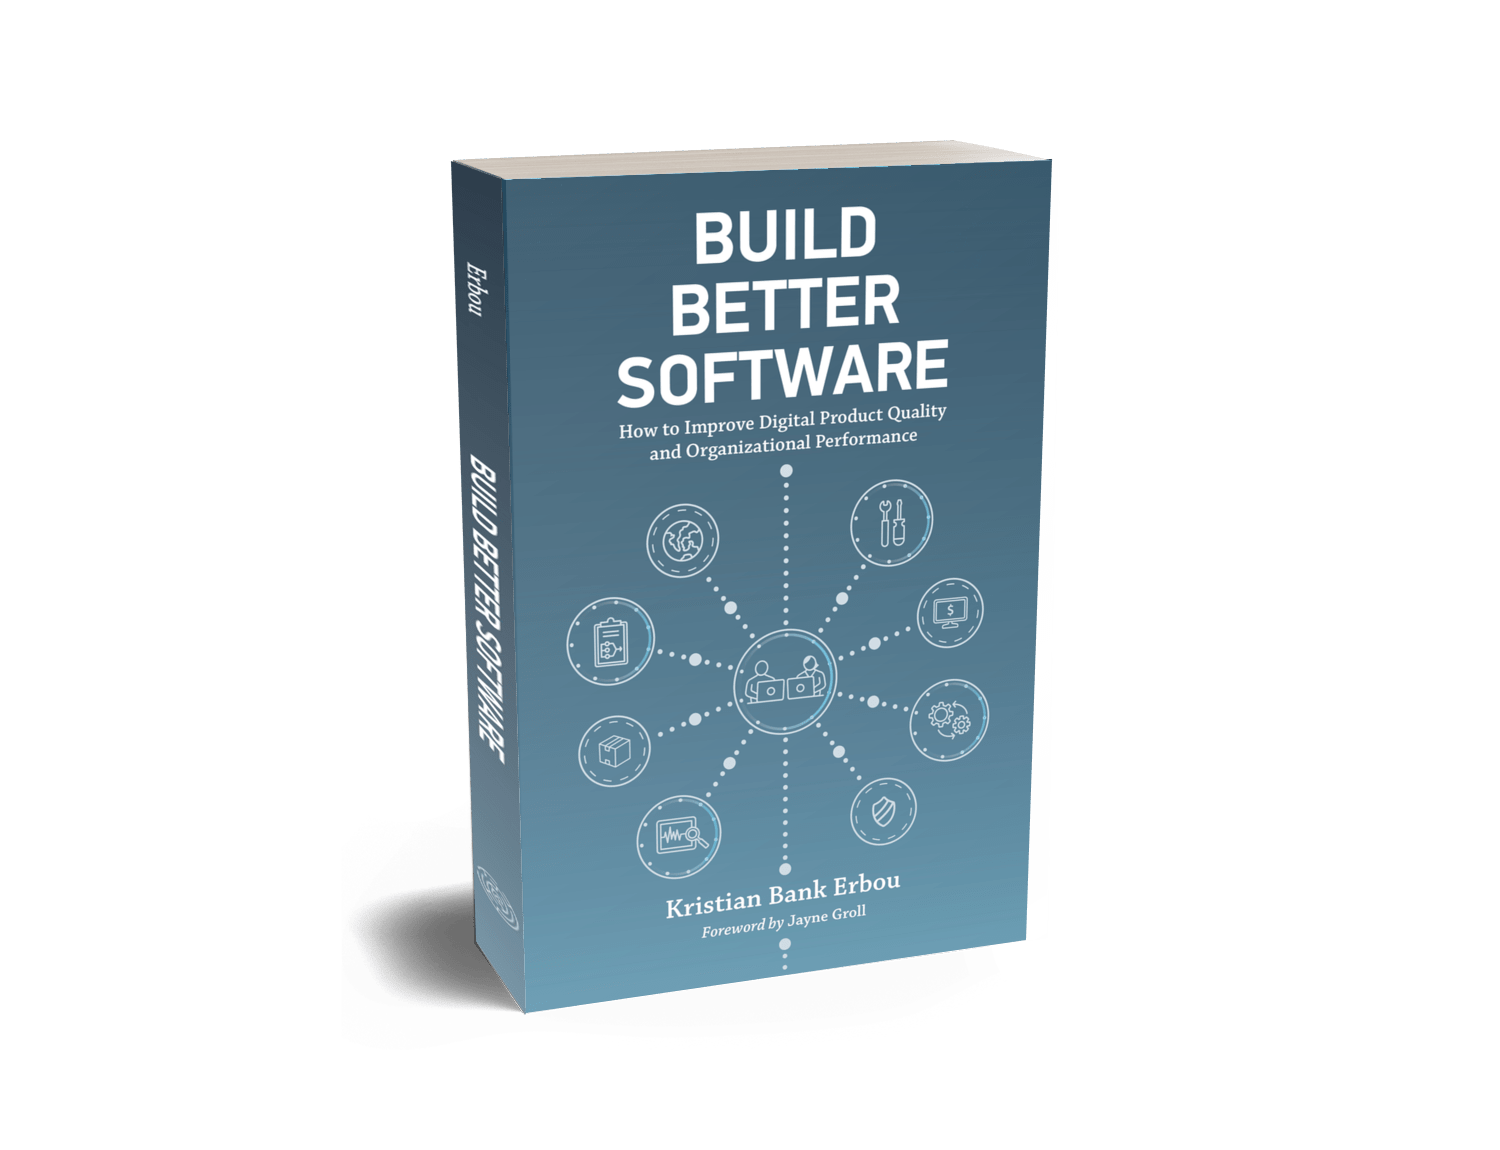 Build better software book